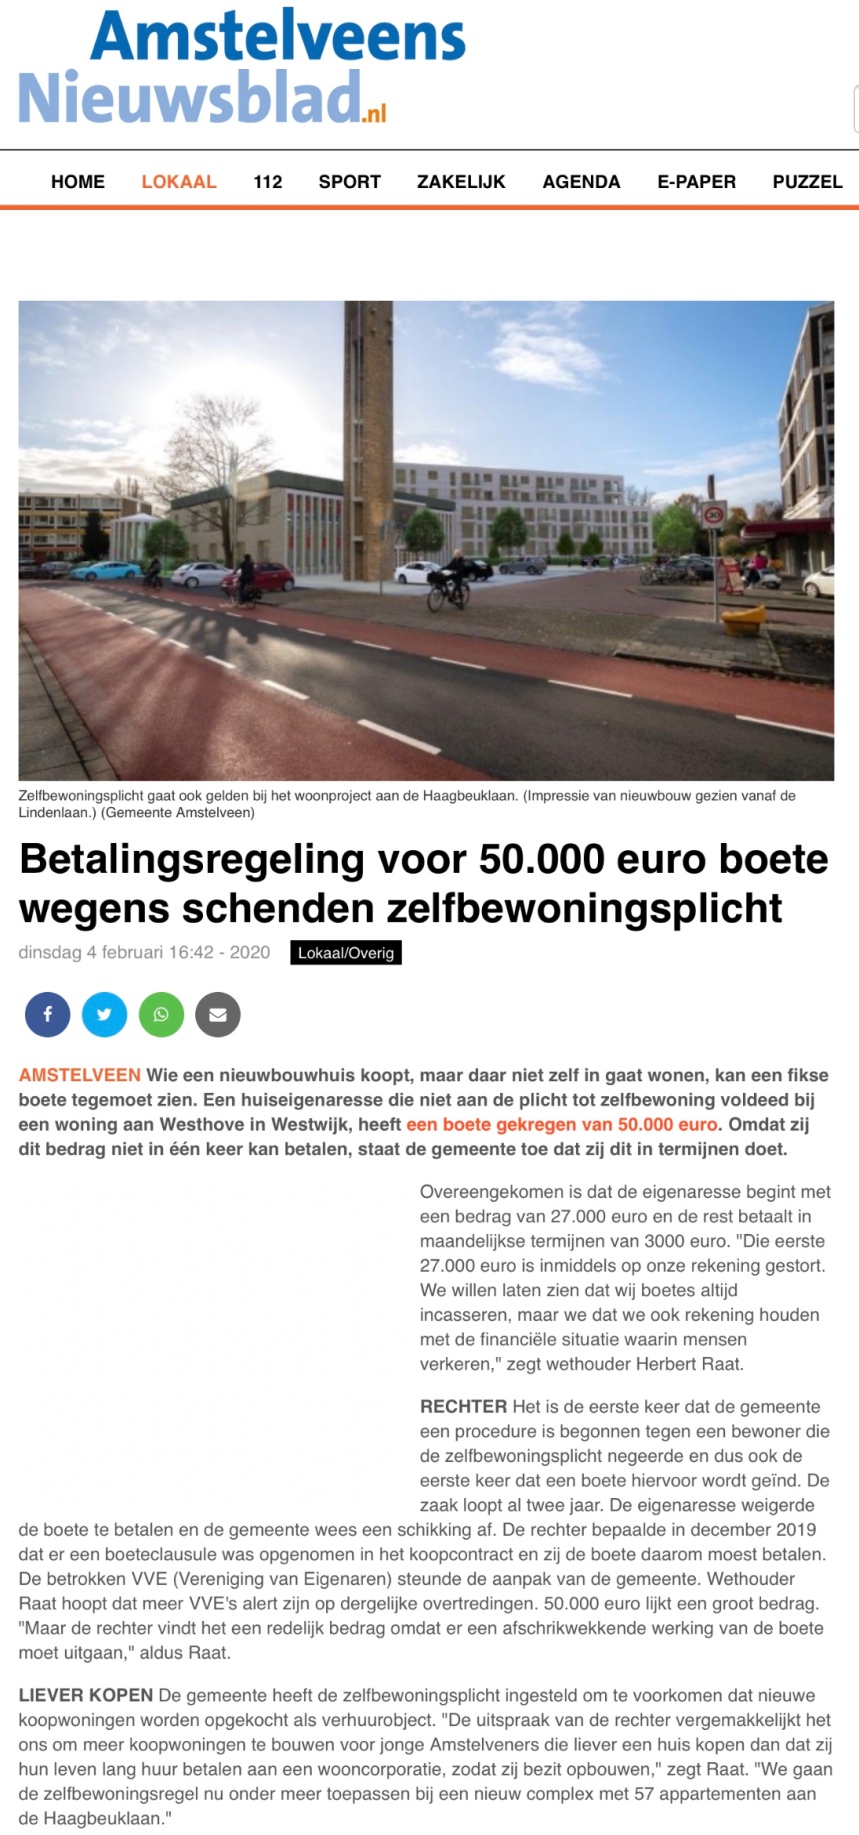 2020-4-2-Amstelveens Nieuwsblad: Herbert Raat over handhaving Zelfbewoningsplicht